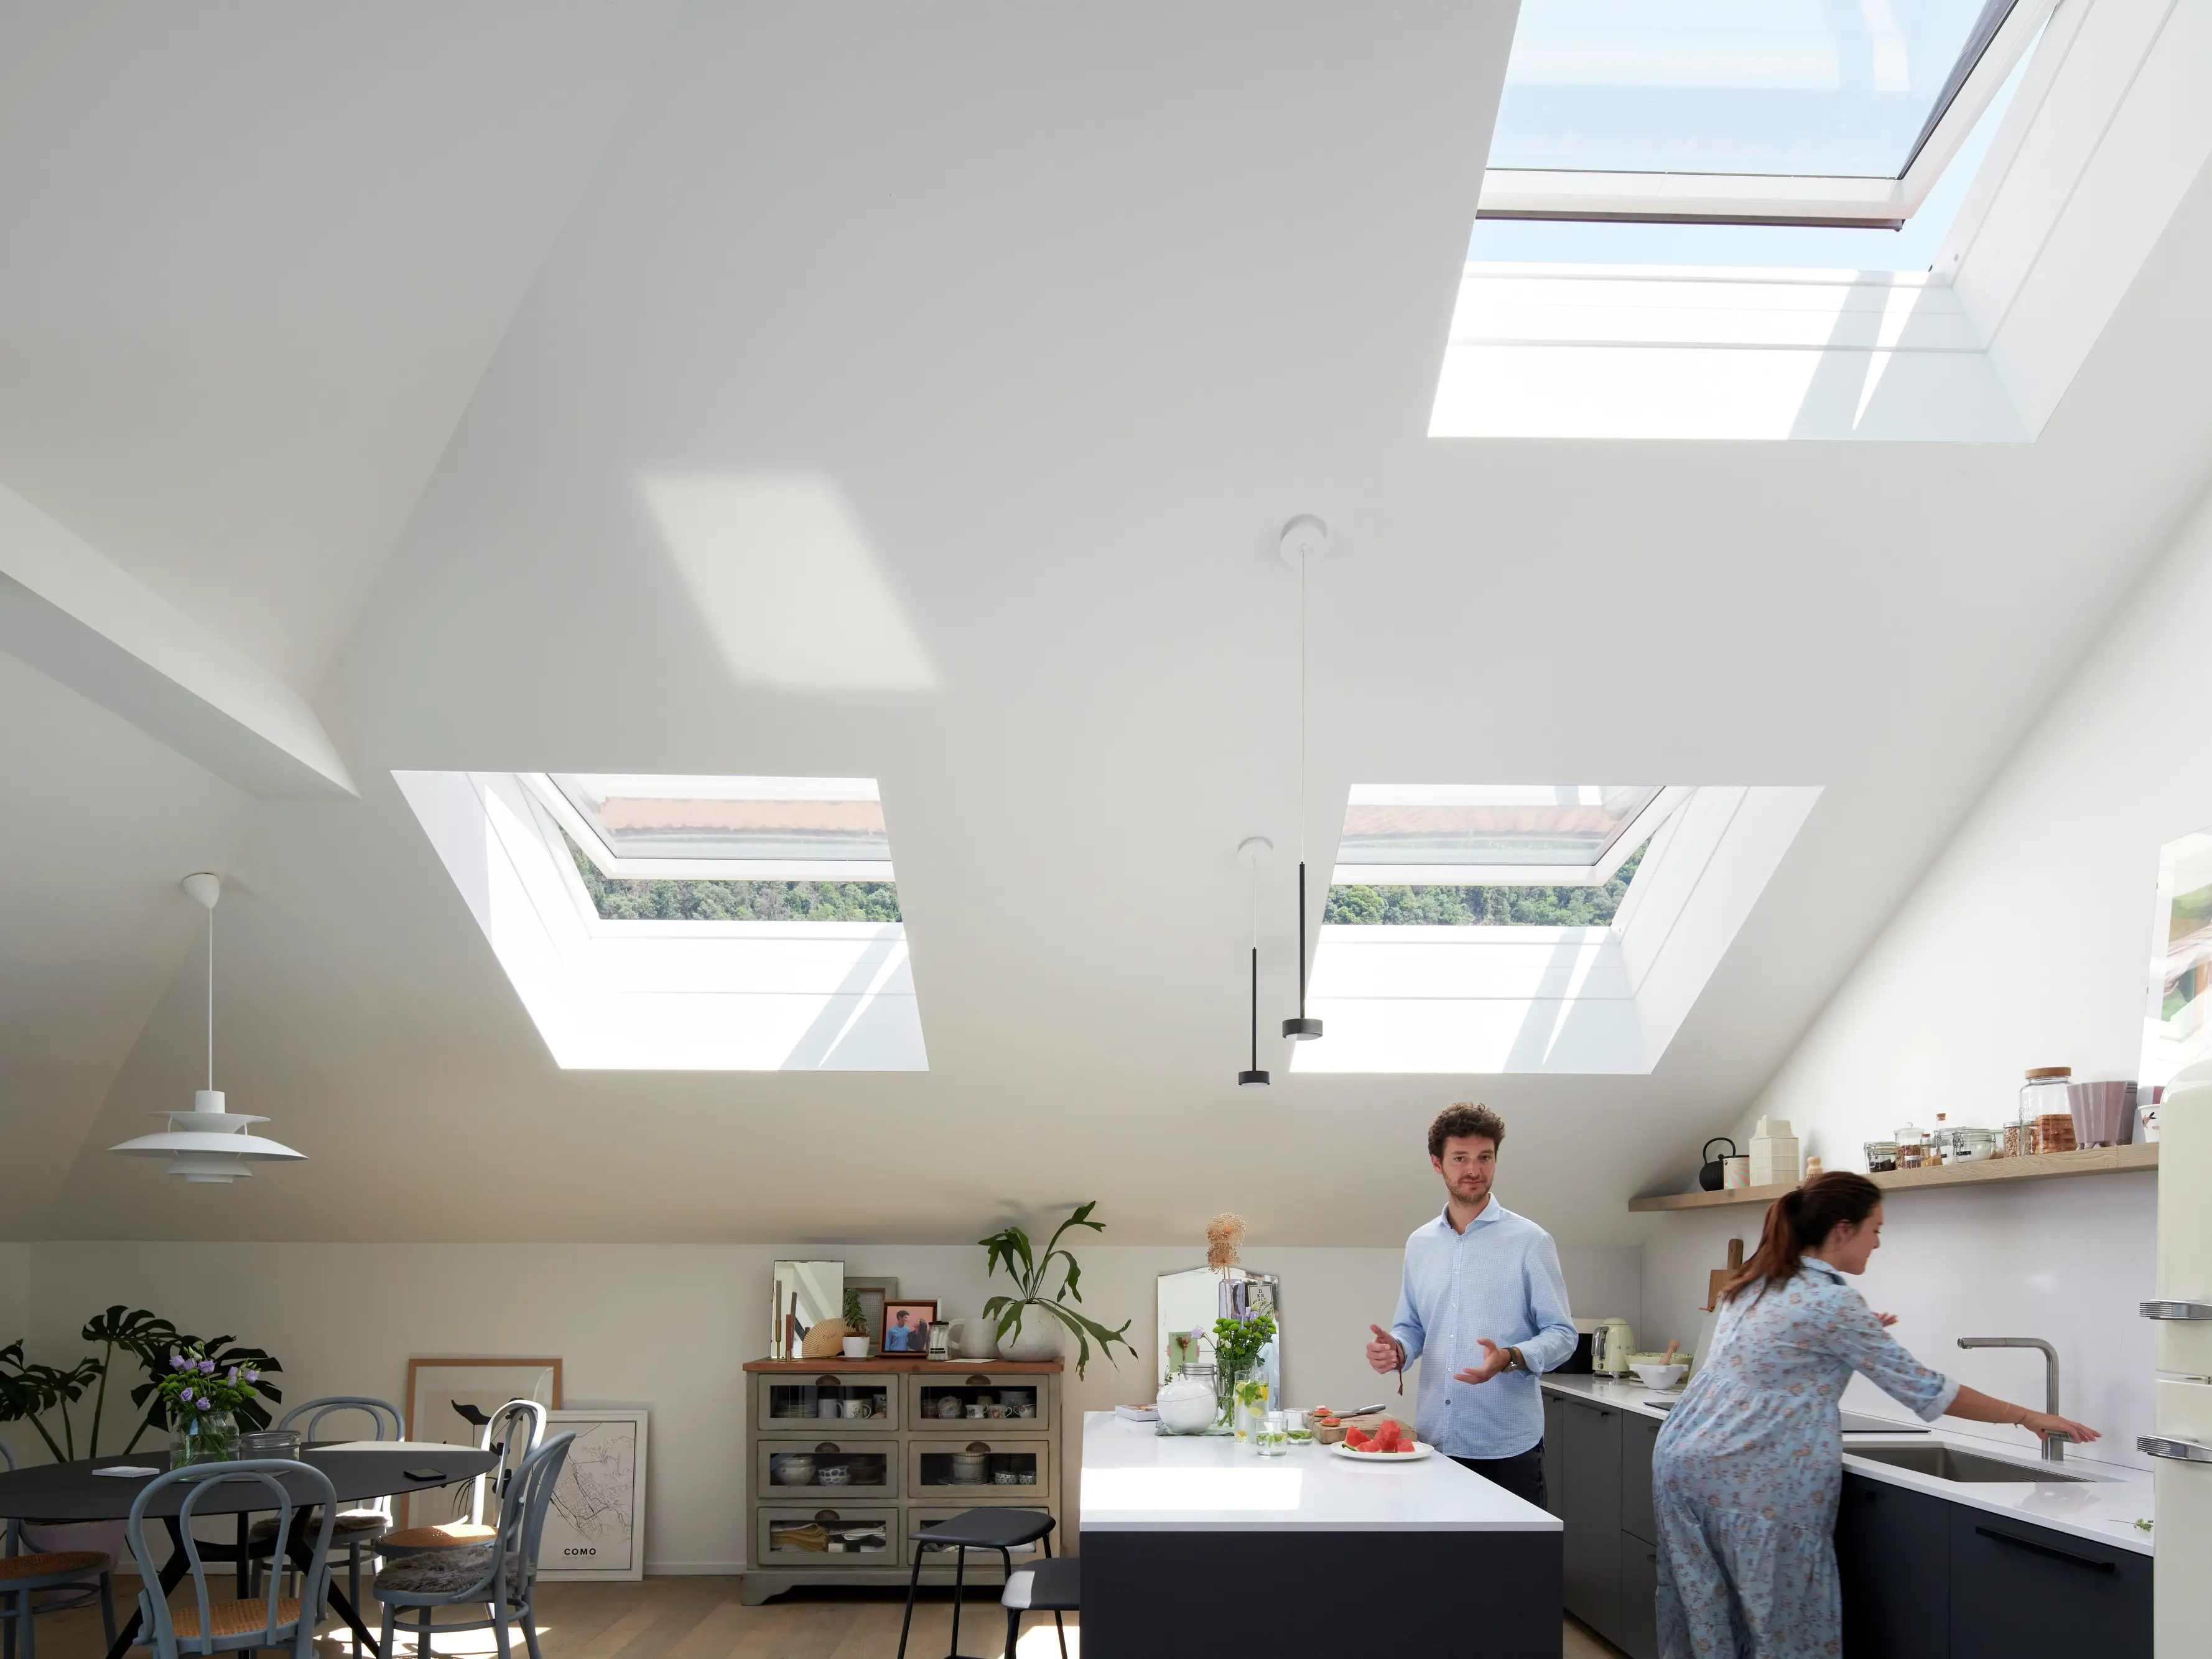 Cuisine moderne avec des comptoirs blancs et des fenêtres de toit VELUX illuminant l'espace.